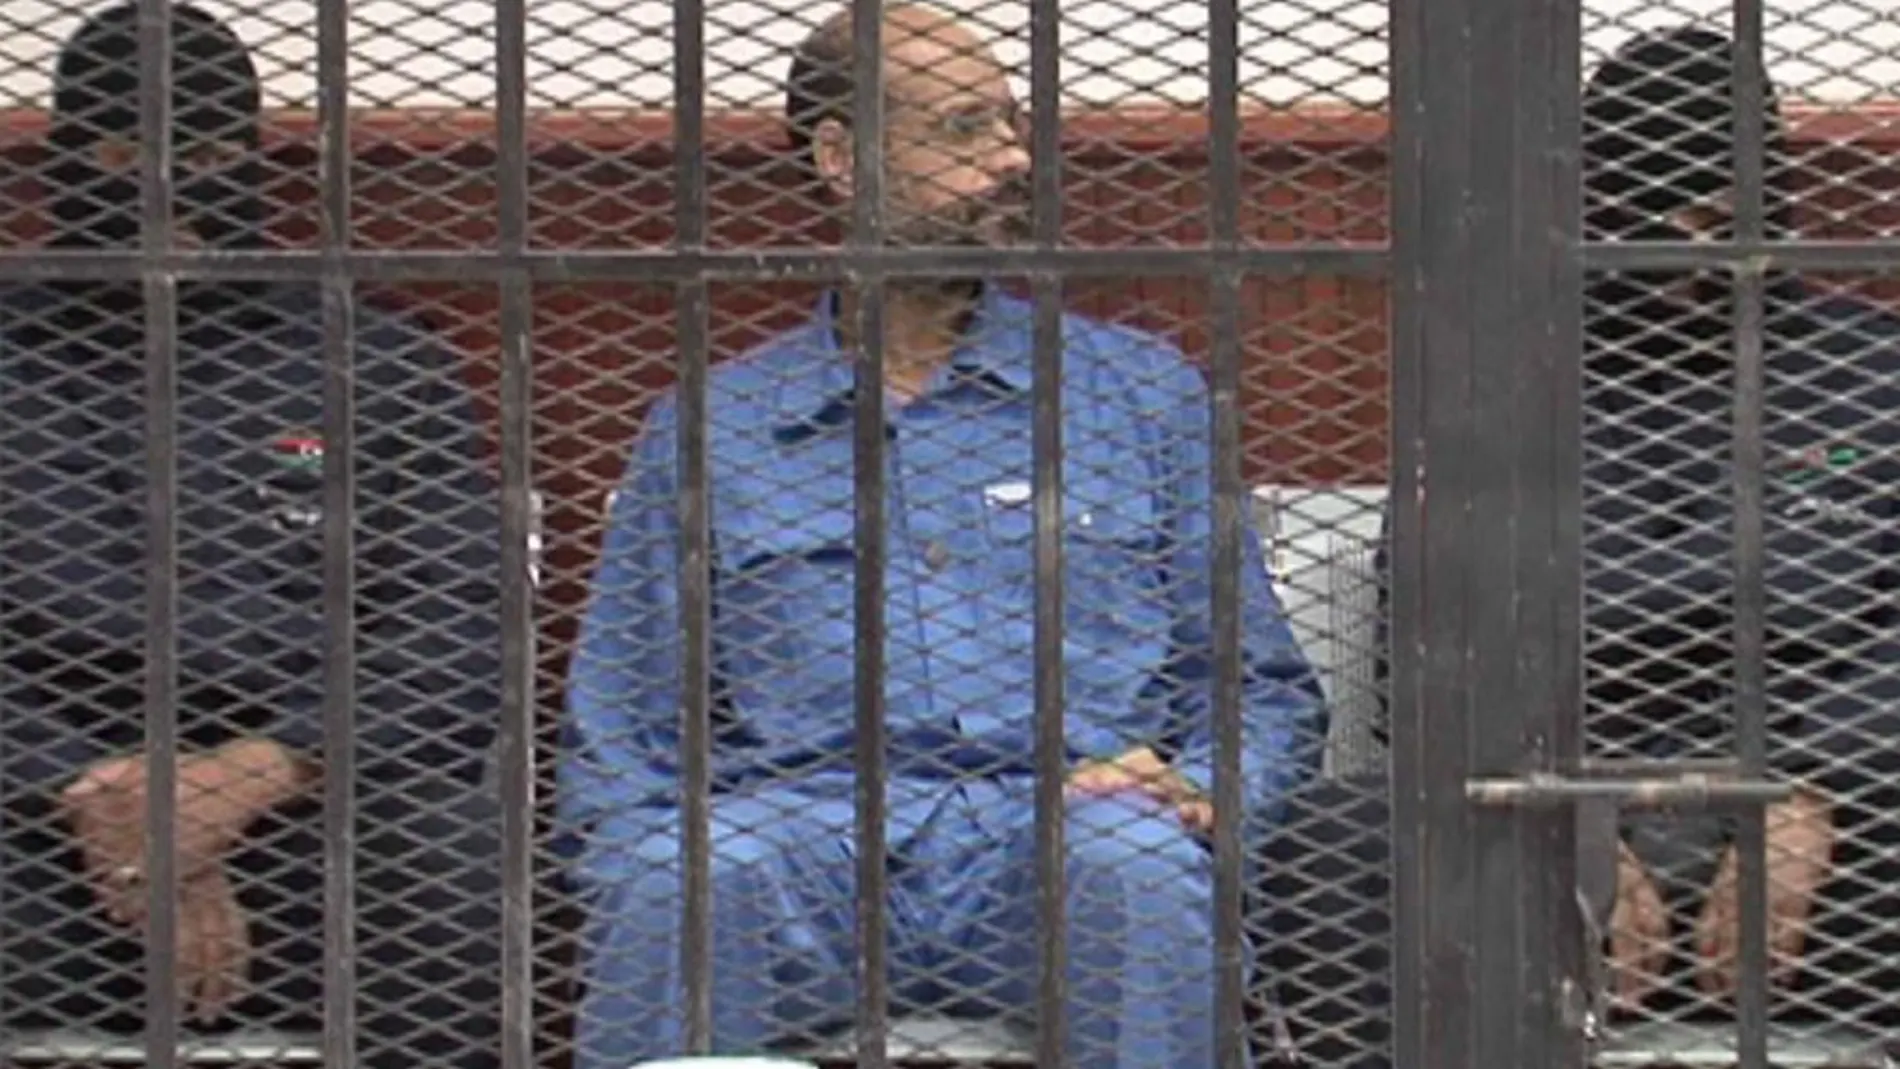 Saif al-Islam (C), el hijo del depuesto líder libio Muammar Gaddafi, se encuentra tras las rejas durante su comparecencia ante el tribunal en Zintan en esta imagen fija tomada de vídeo 02 de mayo 2013.